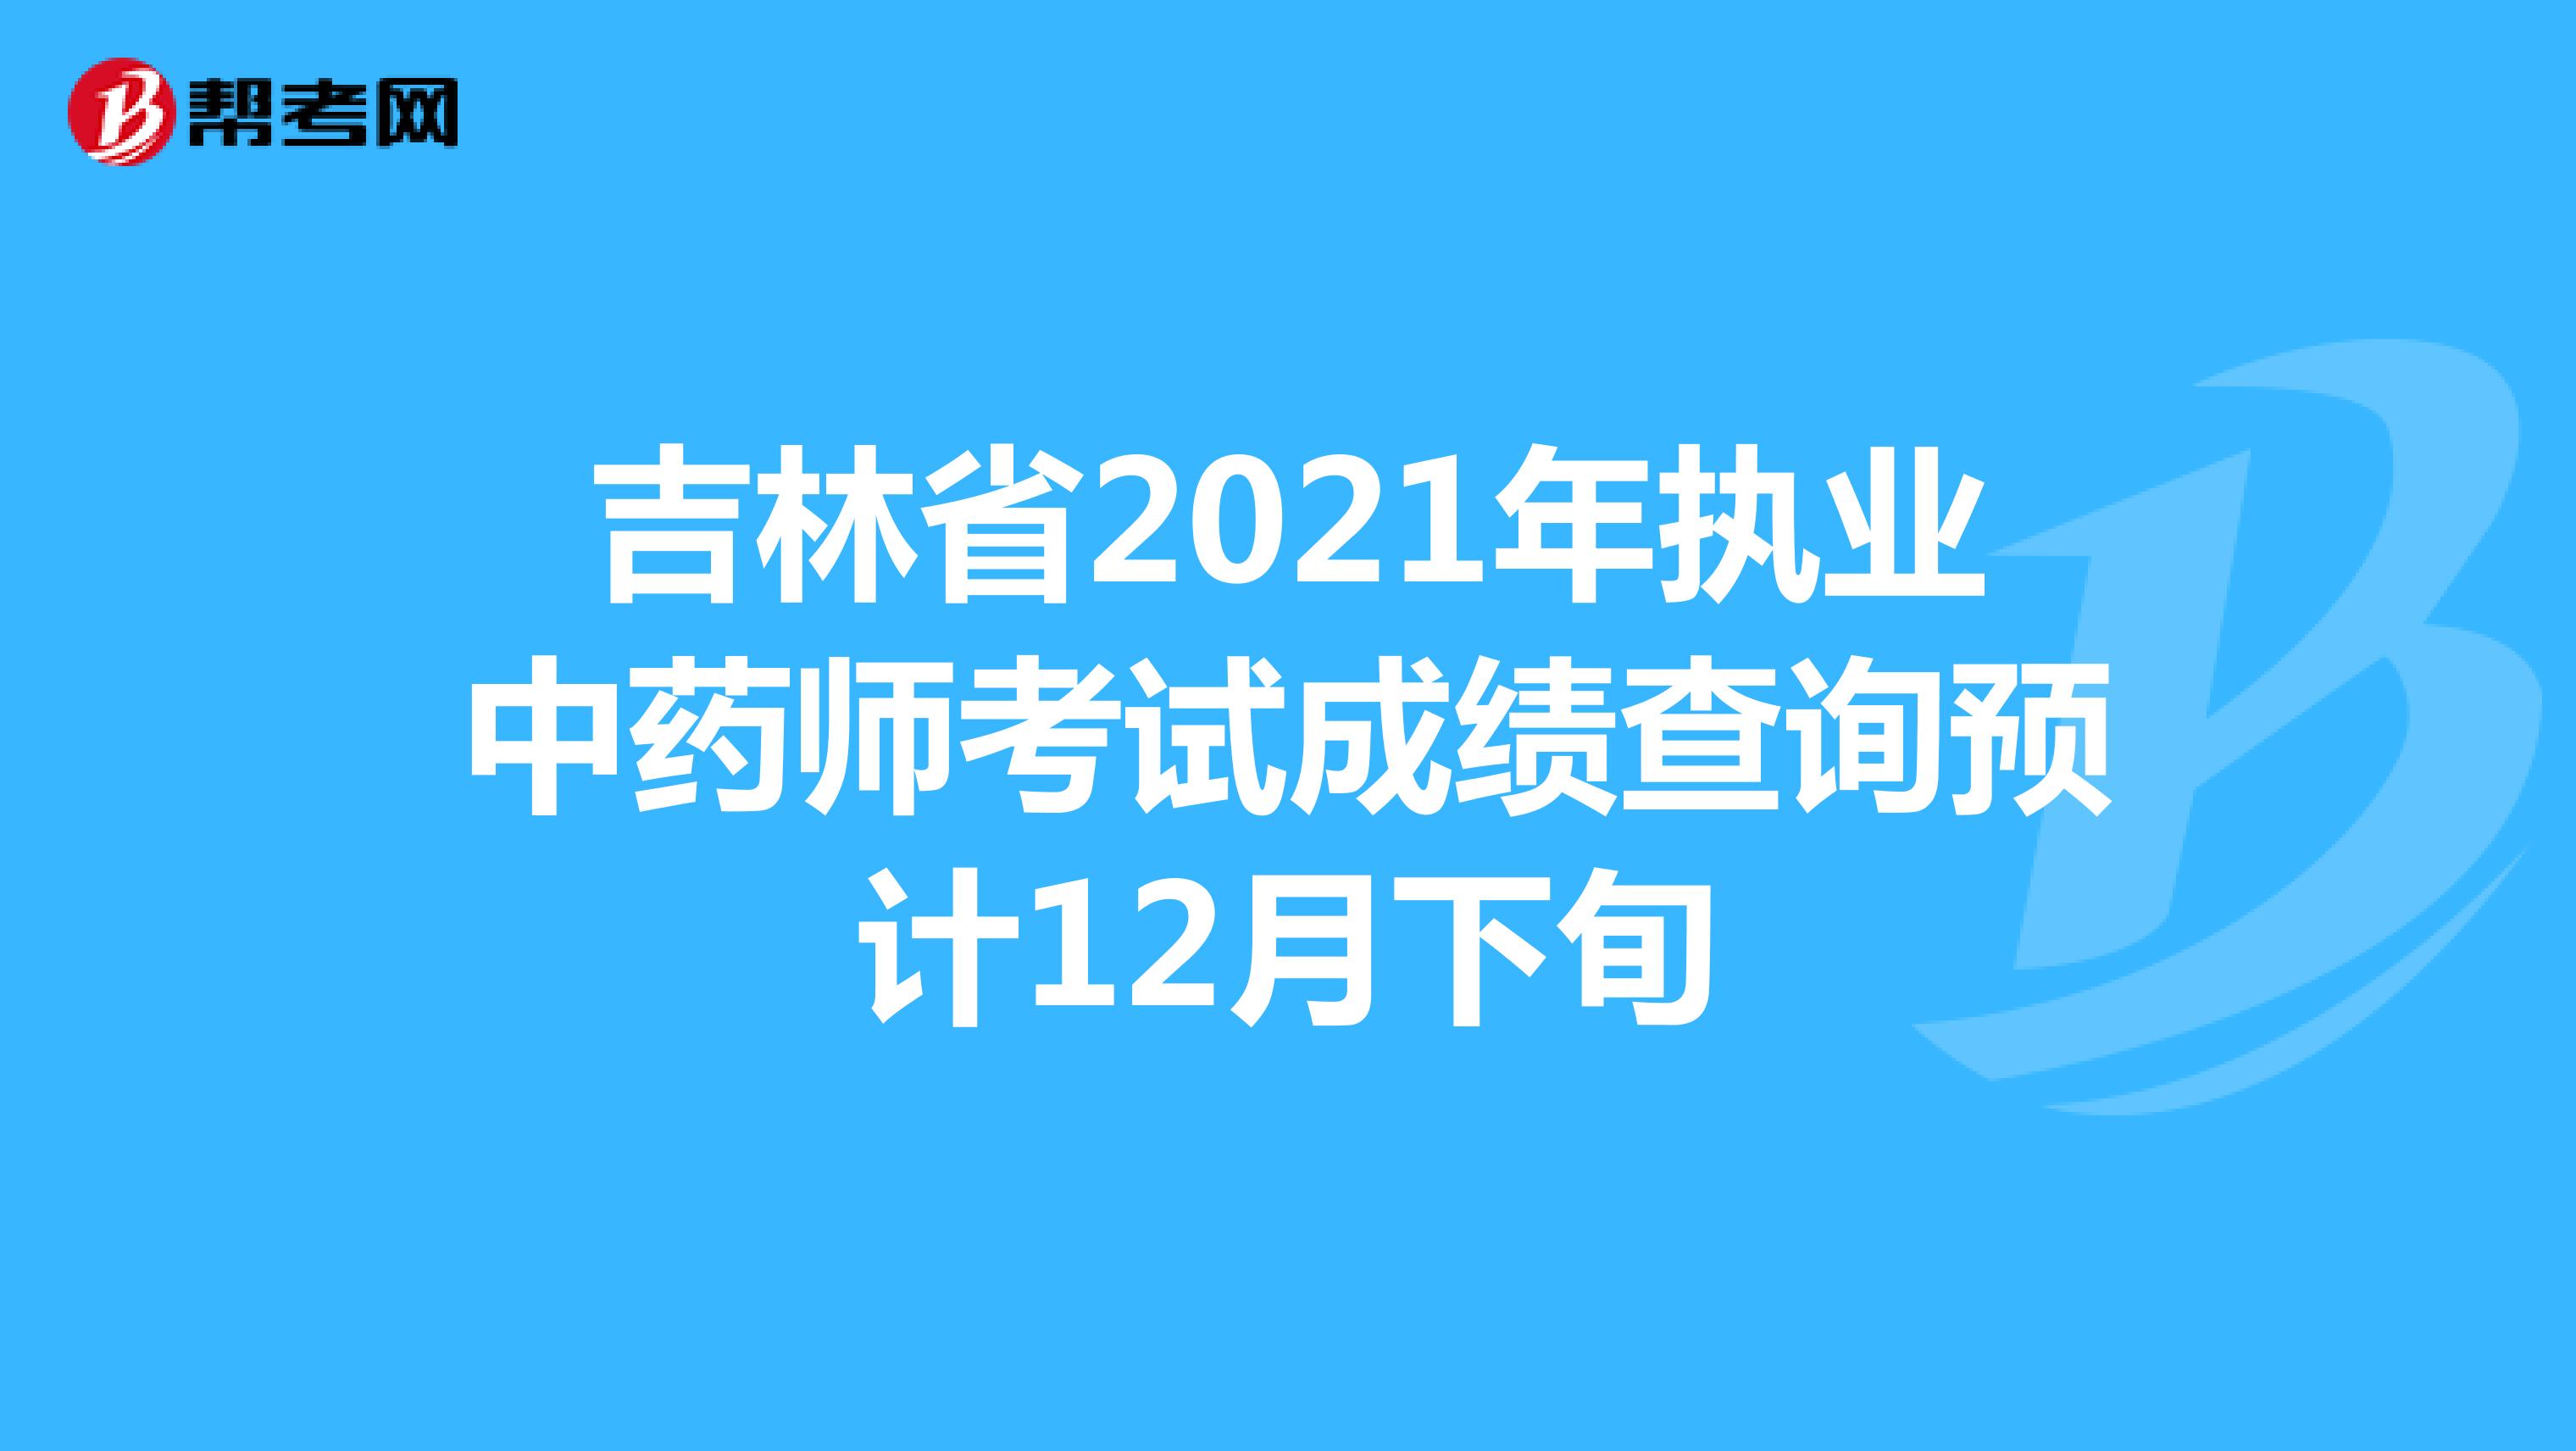 吉林省2021年执业中药师考试成绩查询预计12月下旬